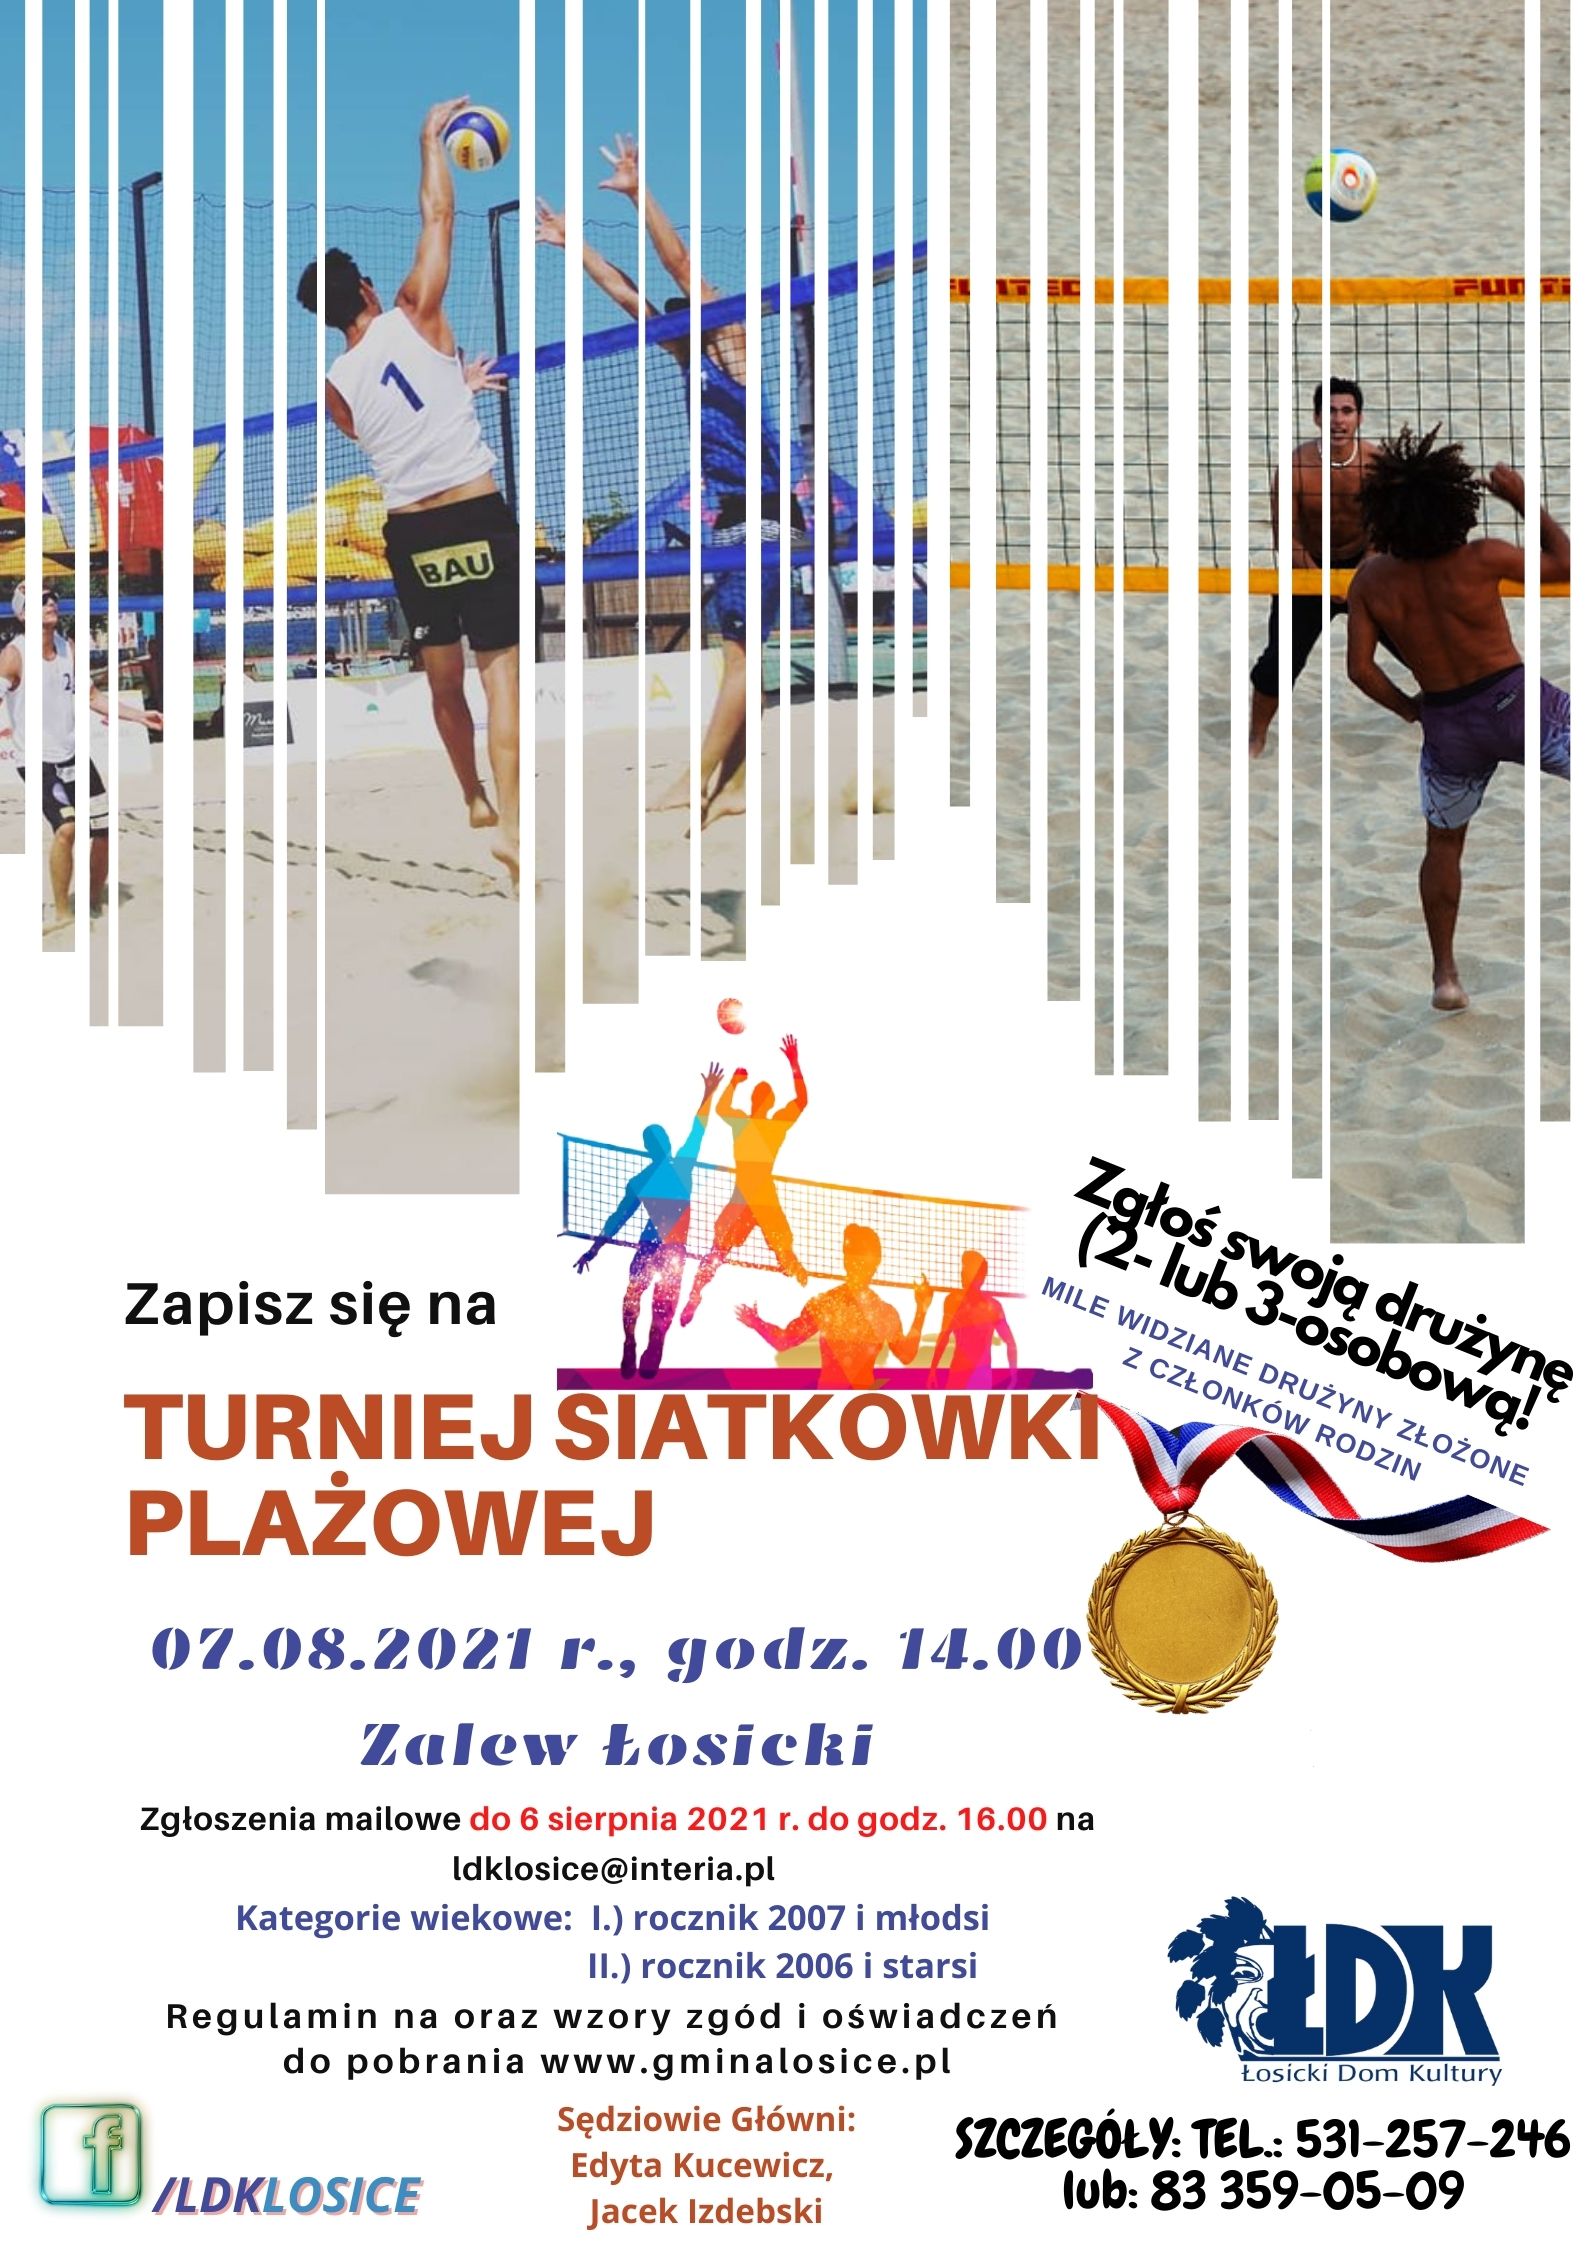 Plakat informując o turnieju siatkówki plażowej, który odbędzie się 7 sierpnia 2021 r. Szczegóły wydarzenia opisane są w treści wpisu.